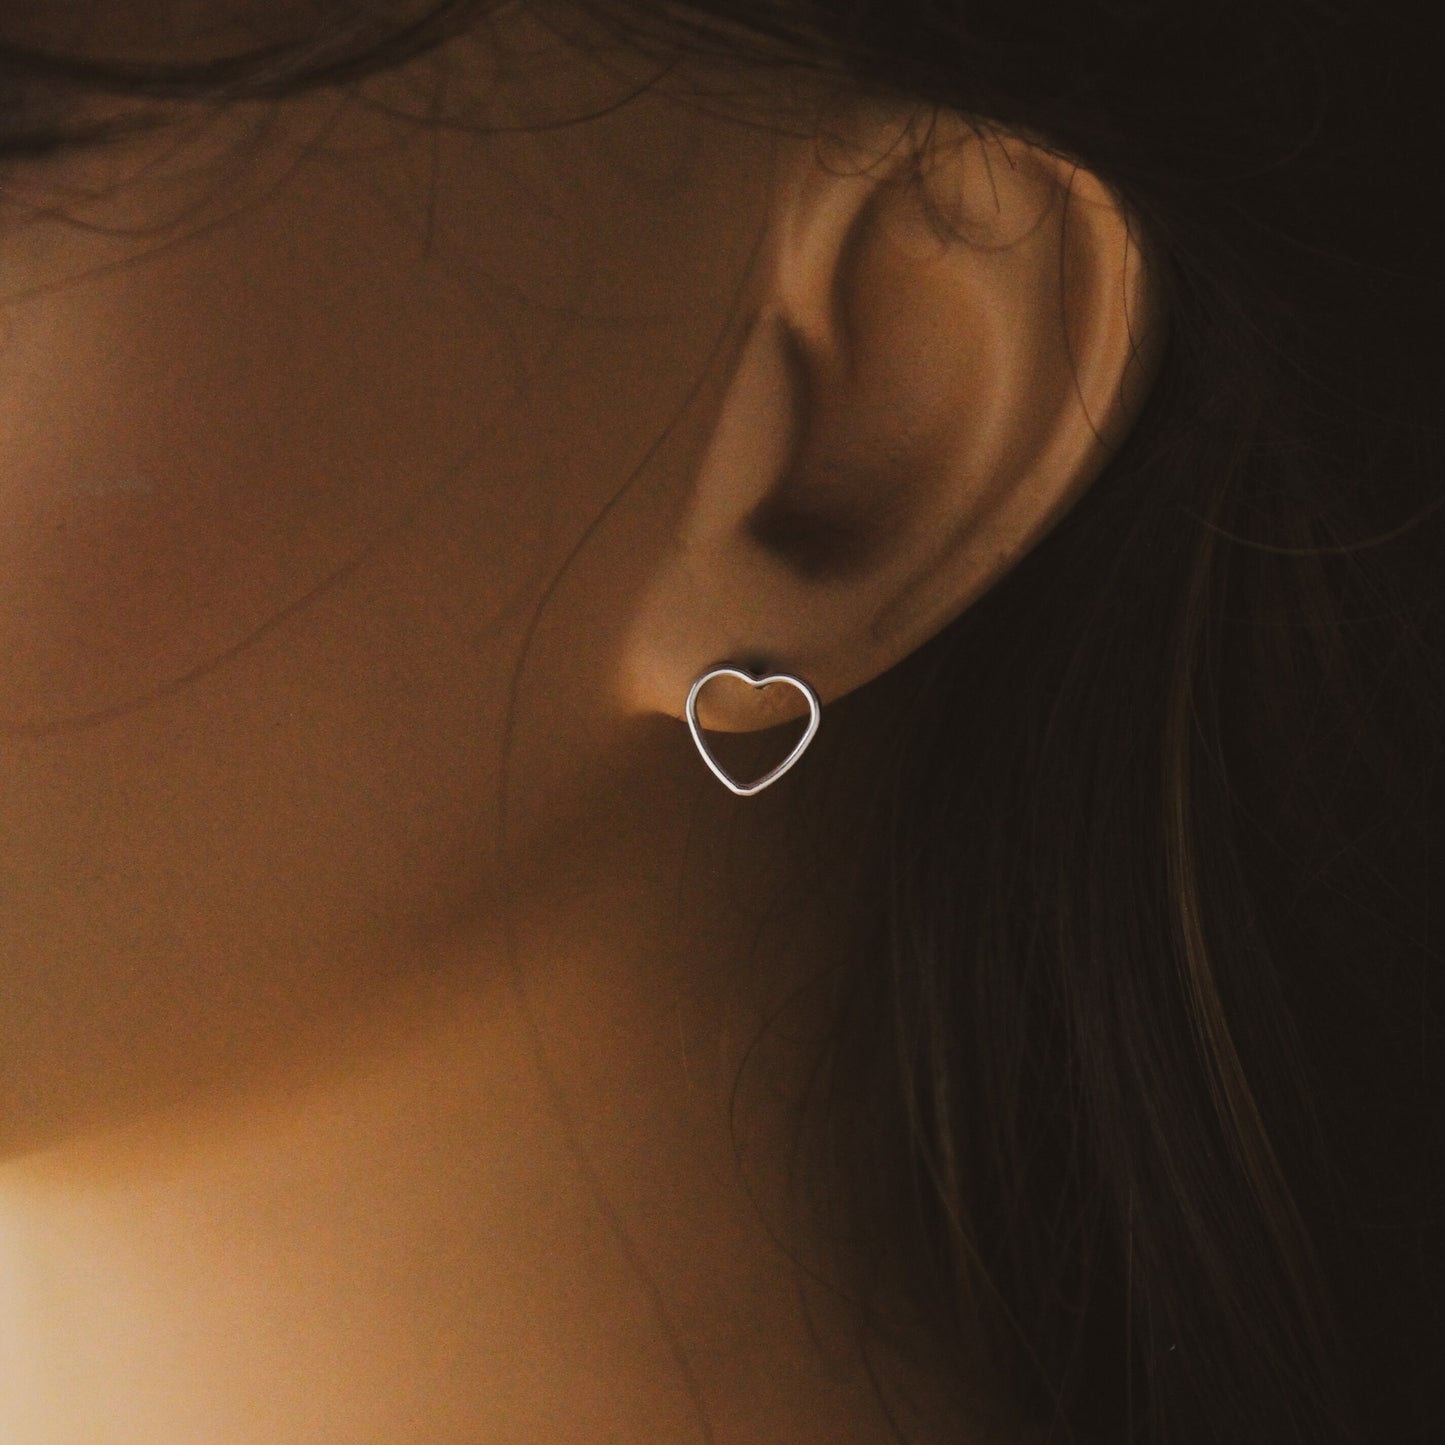 Cute Heart Studs in Sterling Silver, Minimalist Silver Stud Earrings, Cute Gift for Her, Heart Stud Earrings, Cute Heart Jewelry, Valentine